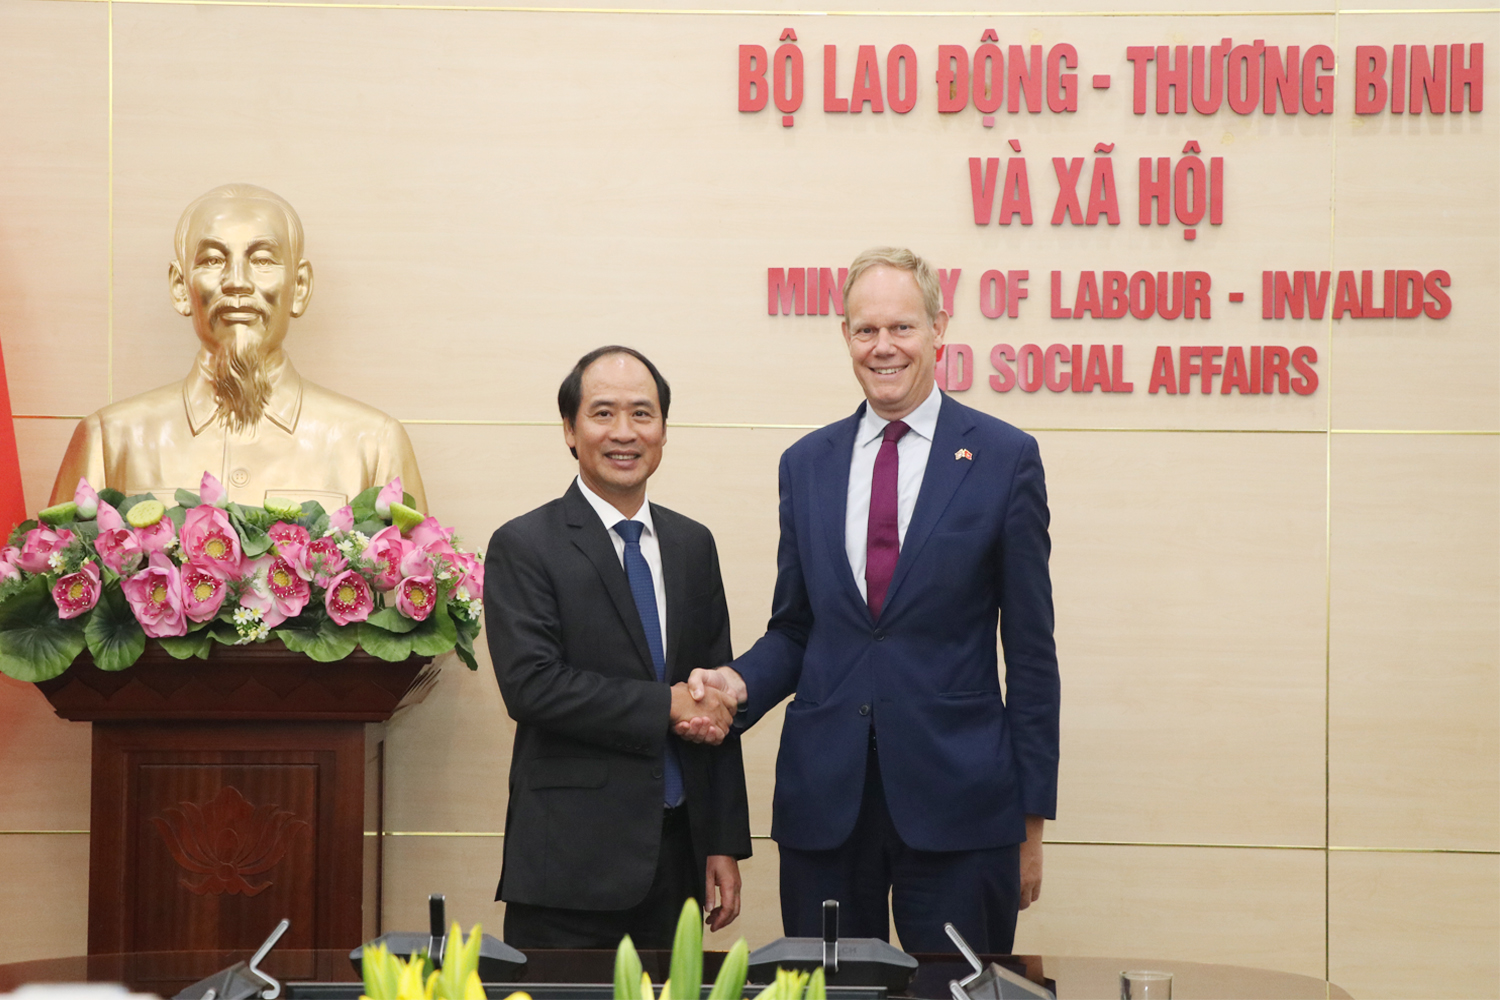 Vương quốc Anh sẽ tiếp tục hỗ trợ các dự án phòng, chống mua bán người của Việt Nam trong 3 năm tới